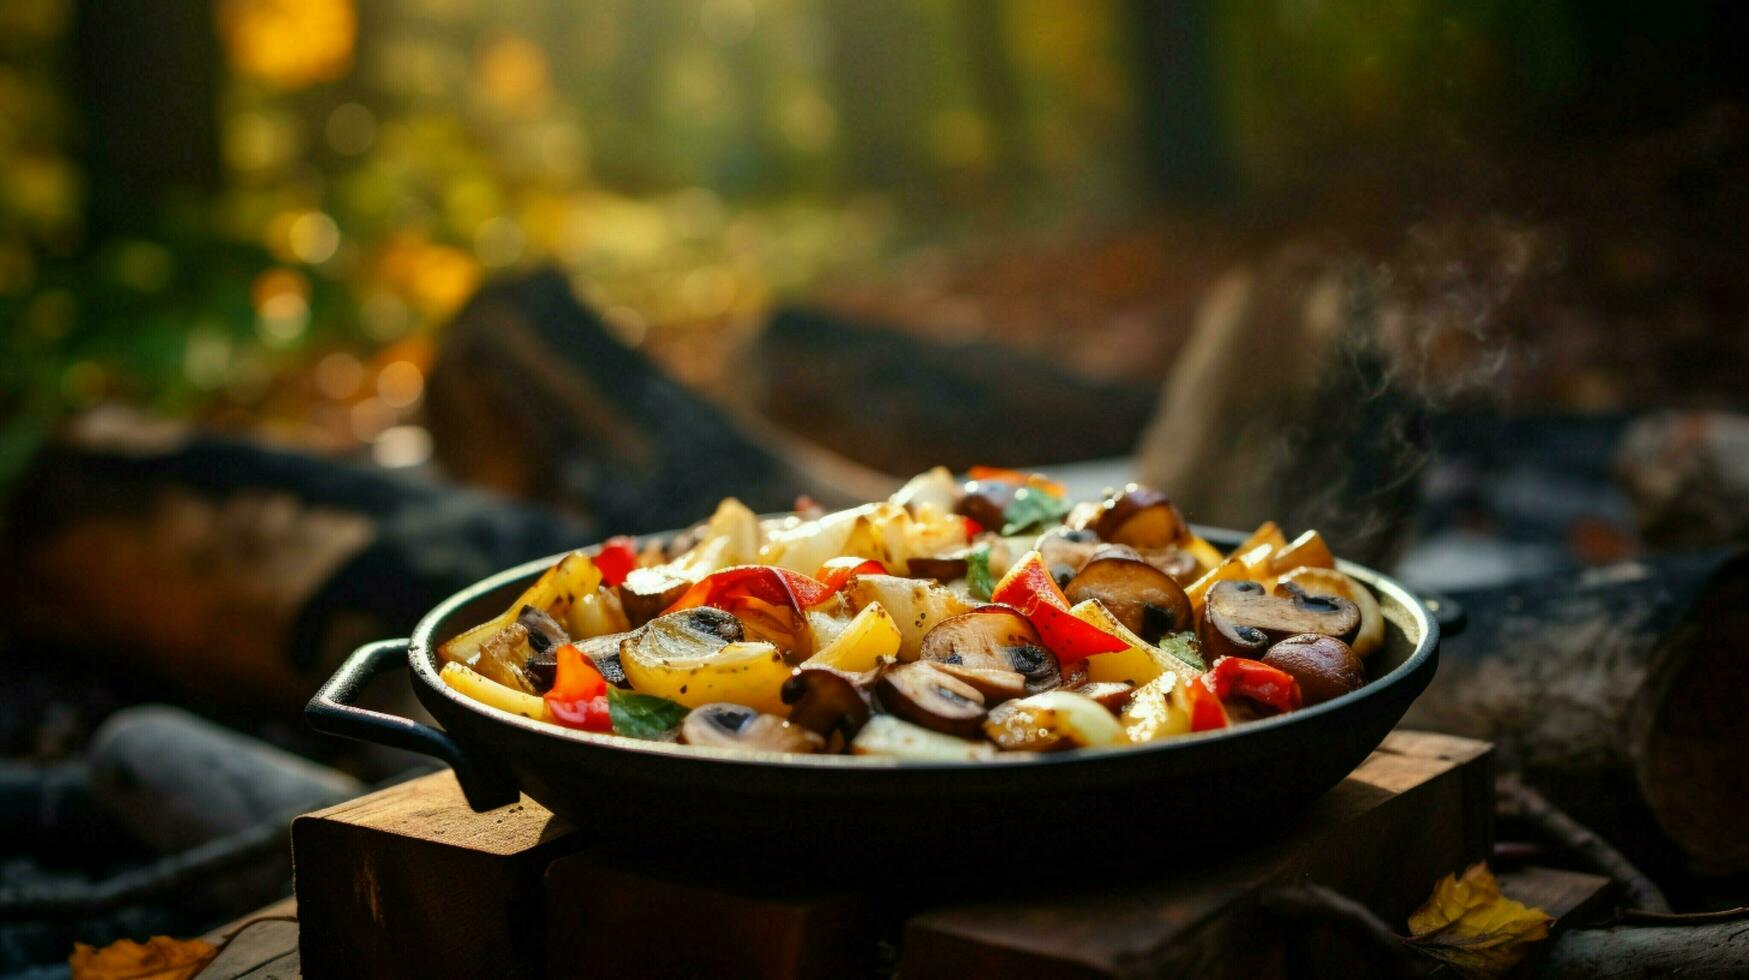 sano vegetariano comida cocido al aire libre en madera fuego foto